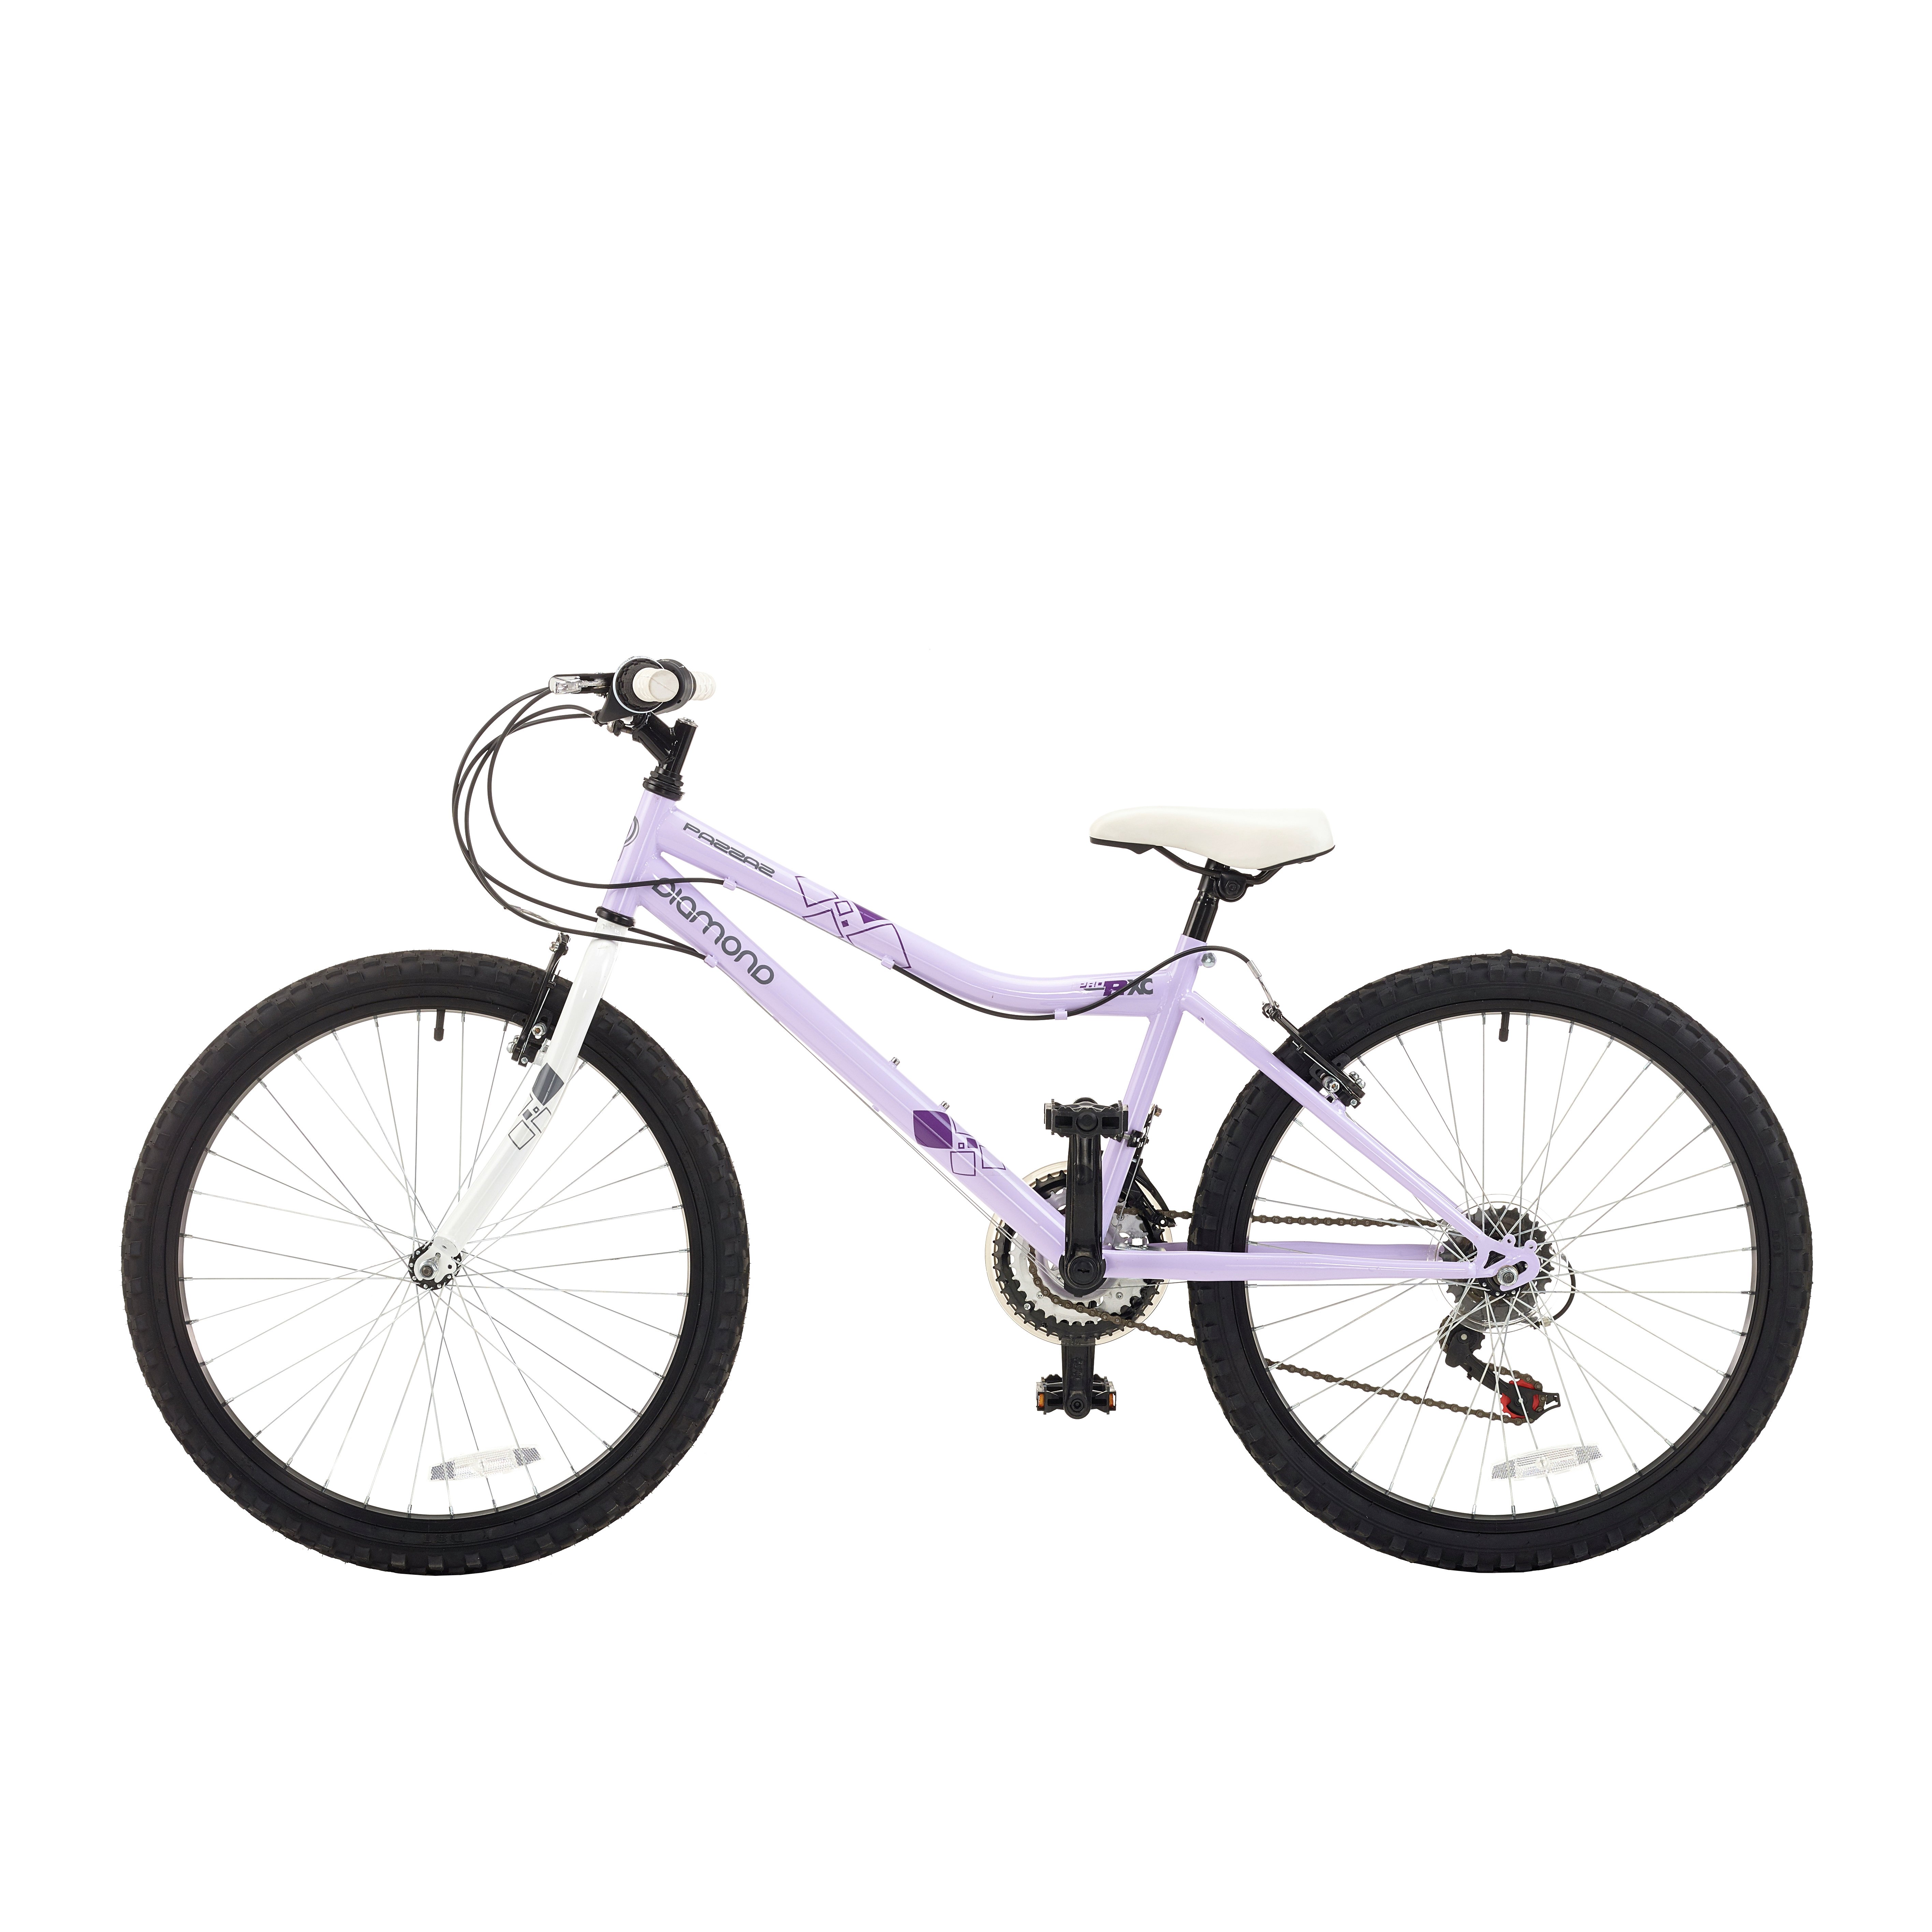 pazzaz diamond 24 inch wheel size kids bike